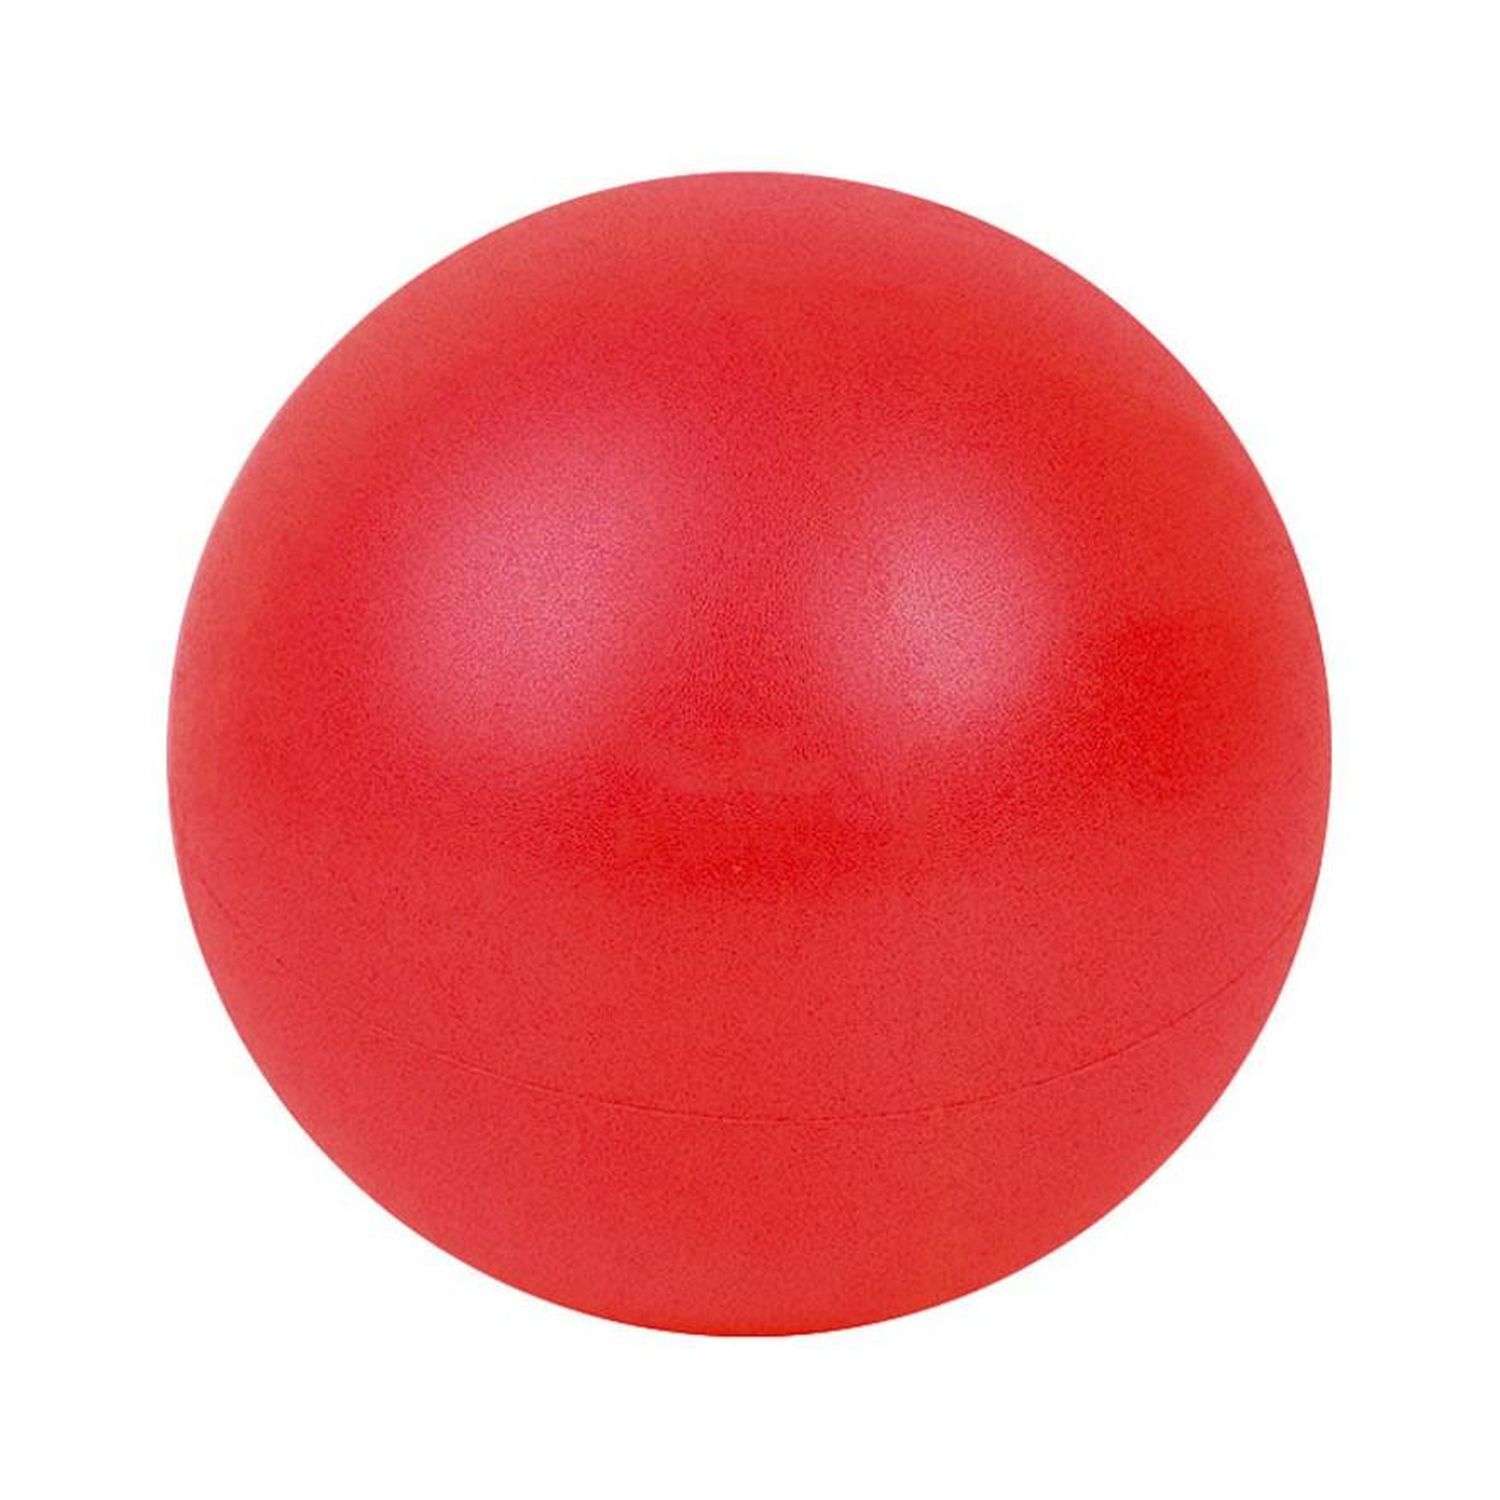 Мяч для йоги и пилатеса Beroma с антивзрывным эффектом 25 см красный - фото 1